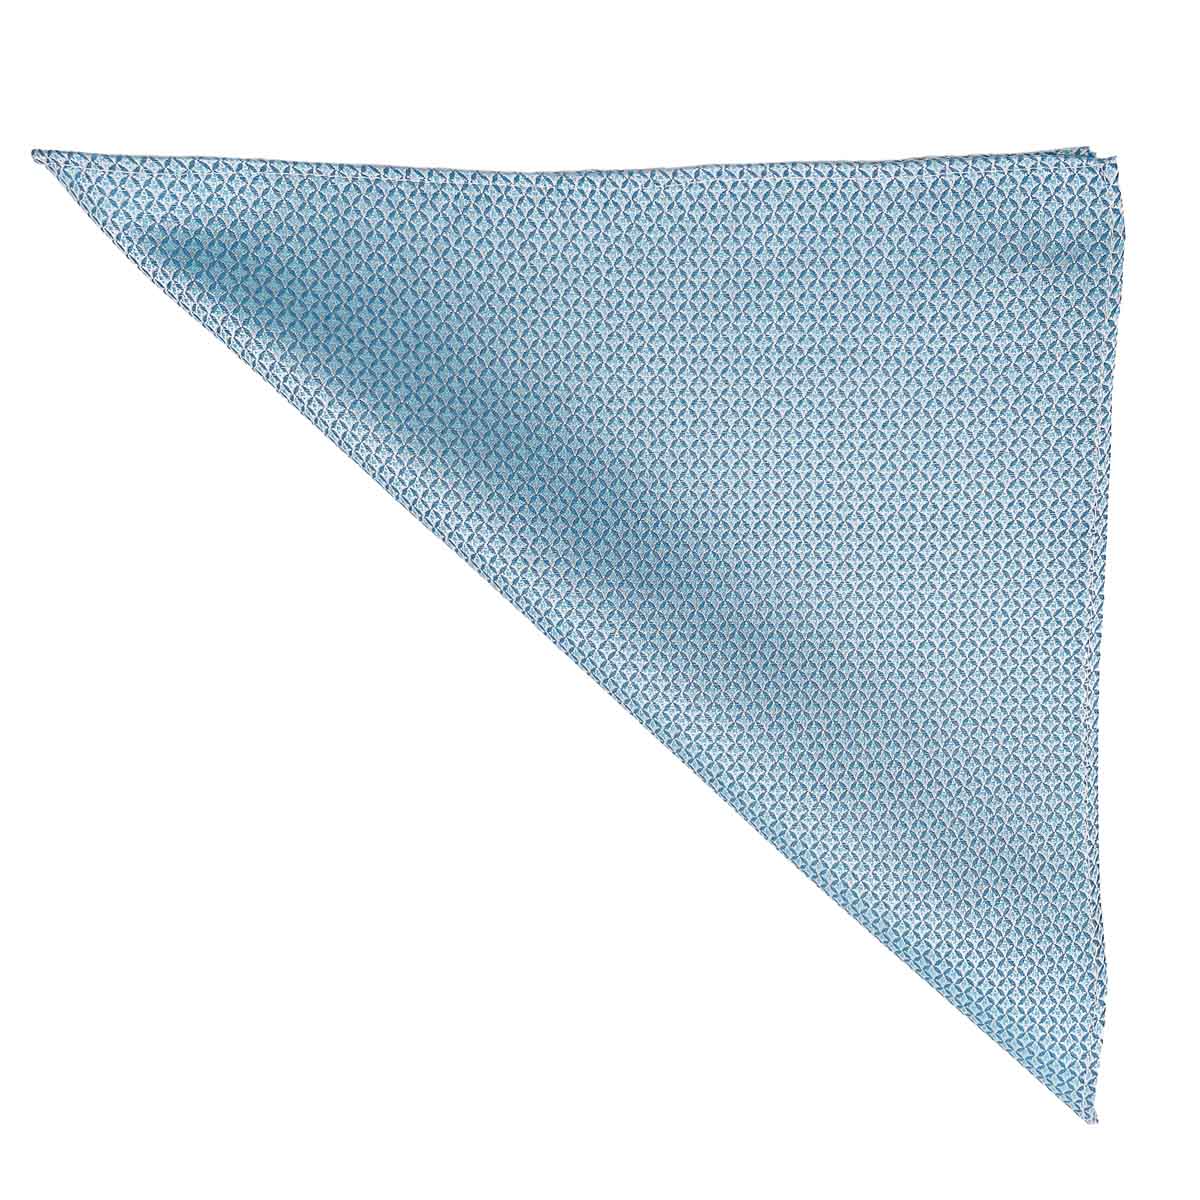 Pañuelo de bolsillo 100% seda - Sarga de seda - Azul - 26x26 cm - Draeger